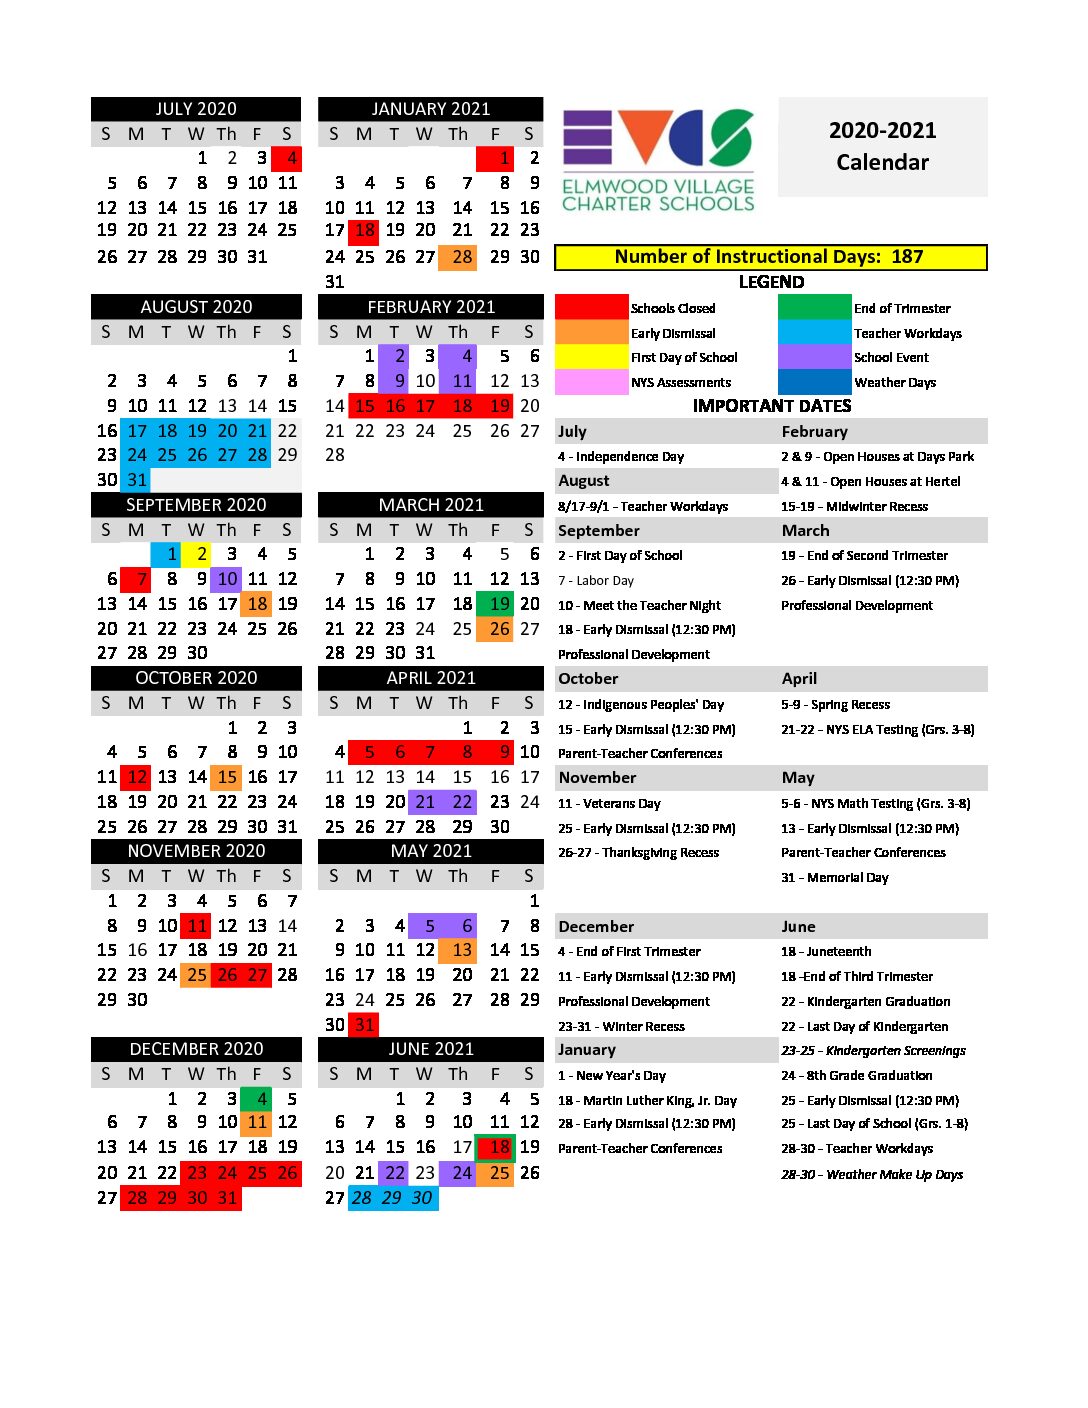 evsc-calendar-2021-22-customize-and-print